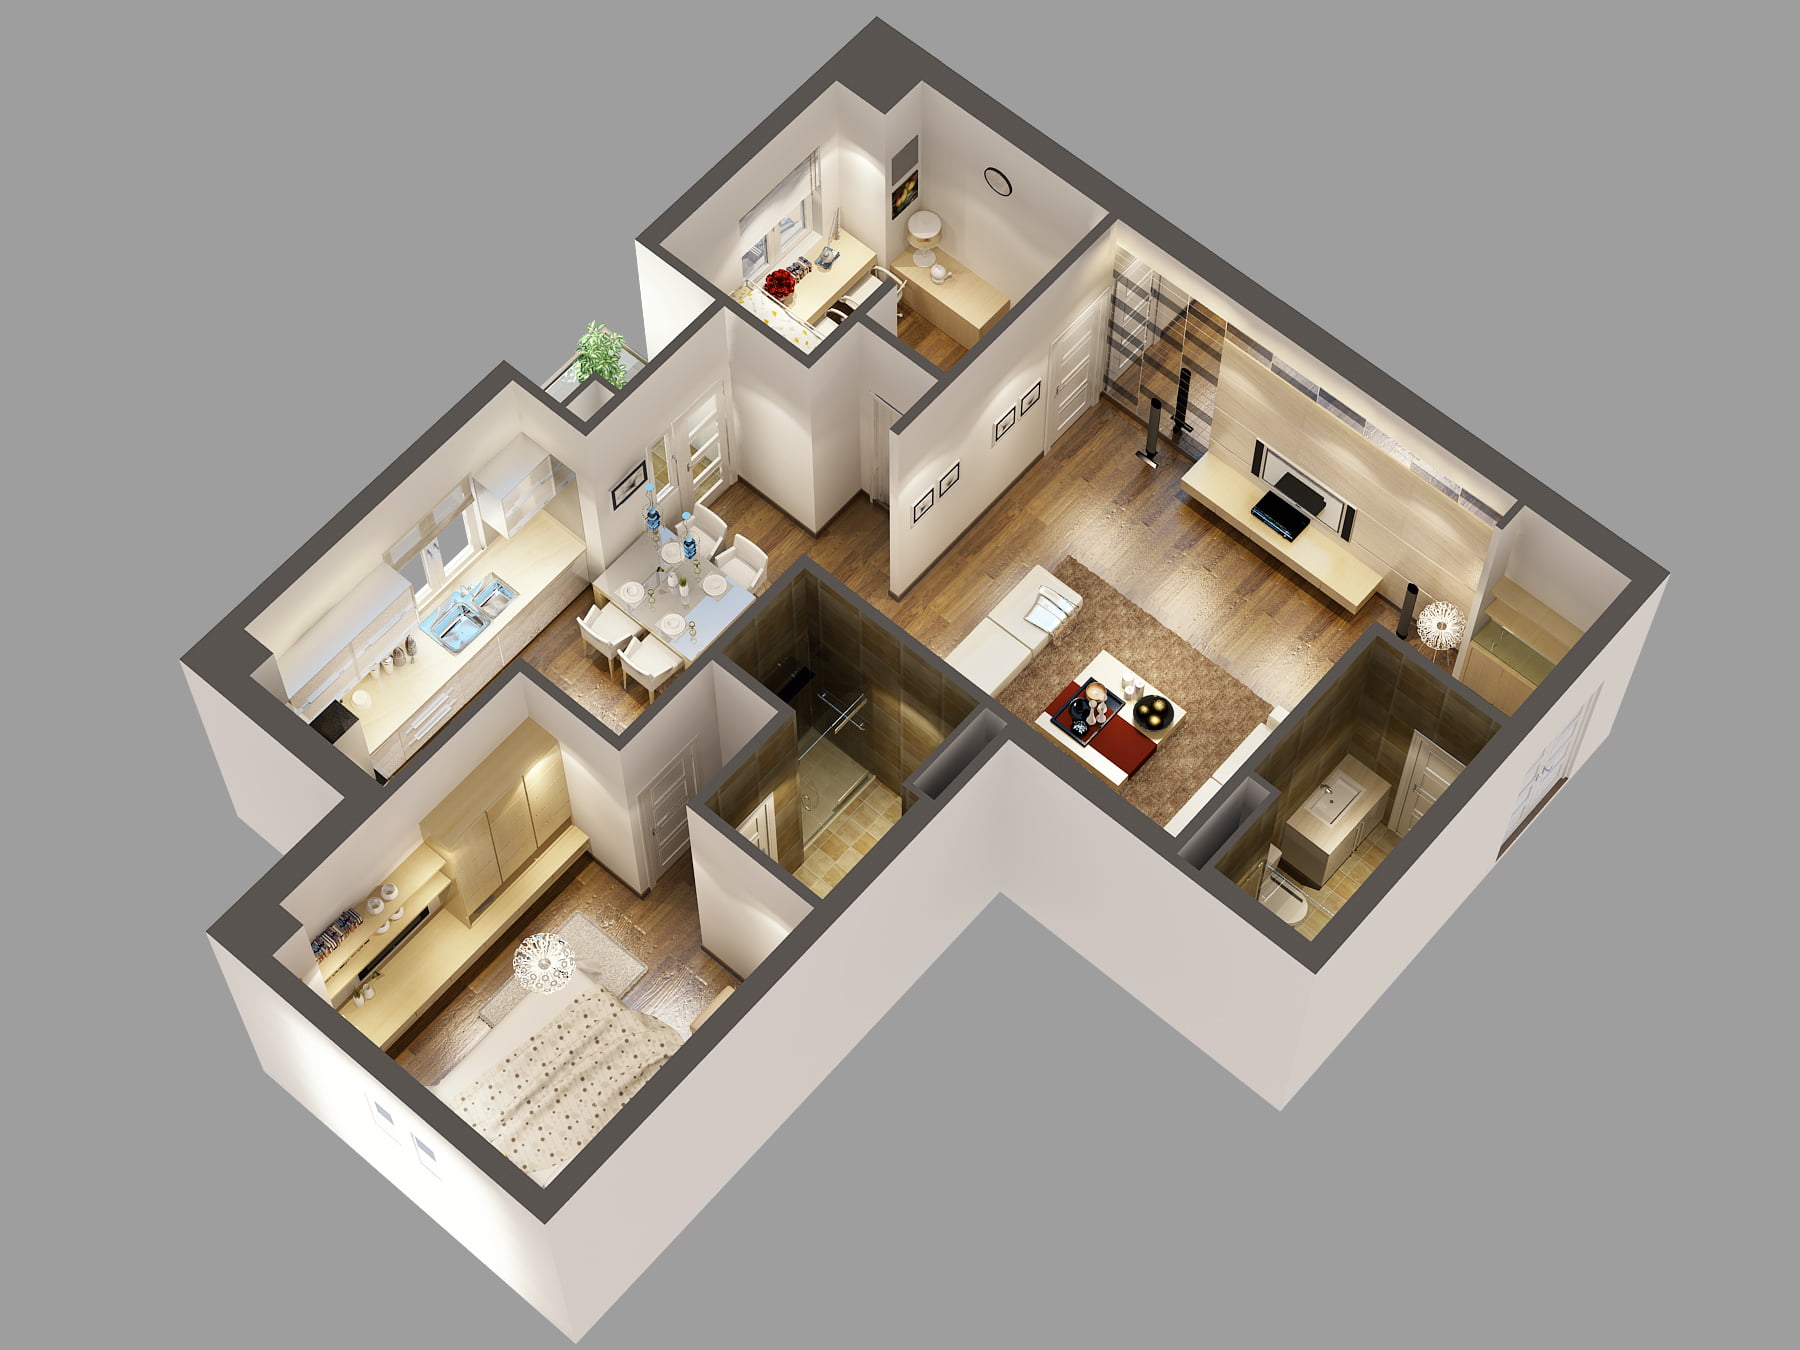 randare vizualizare interioara apartament 3 camere, living, mobilier, bucatarie, dormitoare